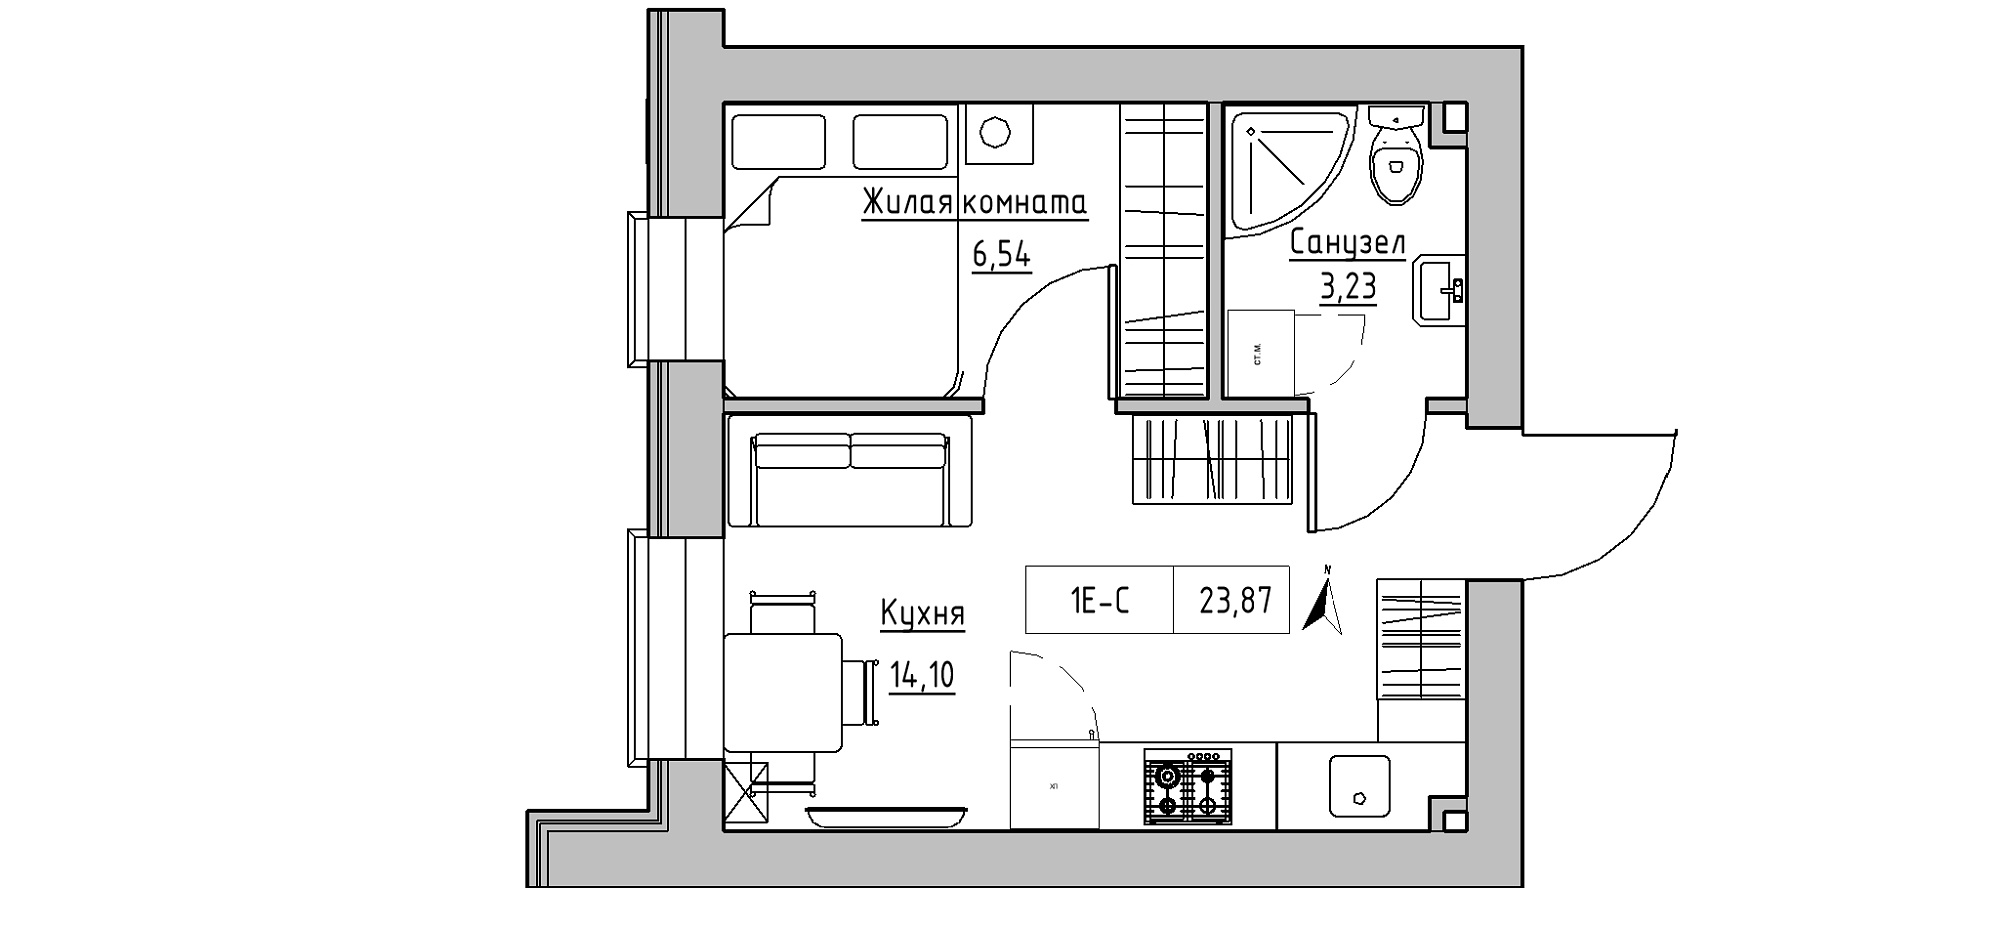 Планування 1-к квартира площею 23.87м2, KS-020-05/0015.